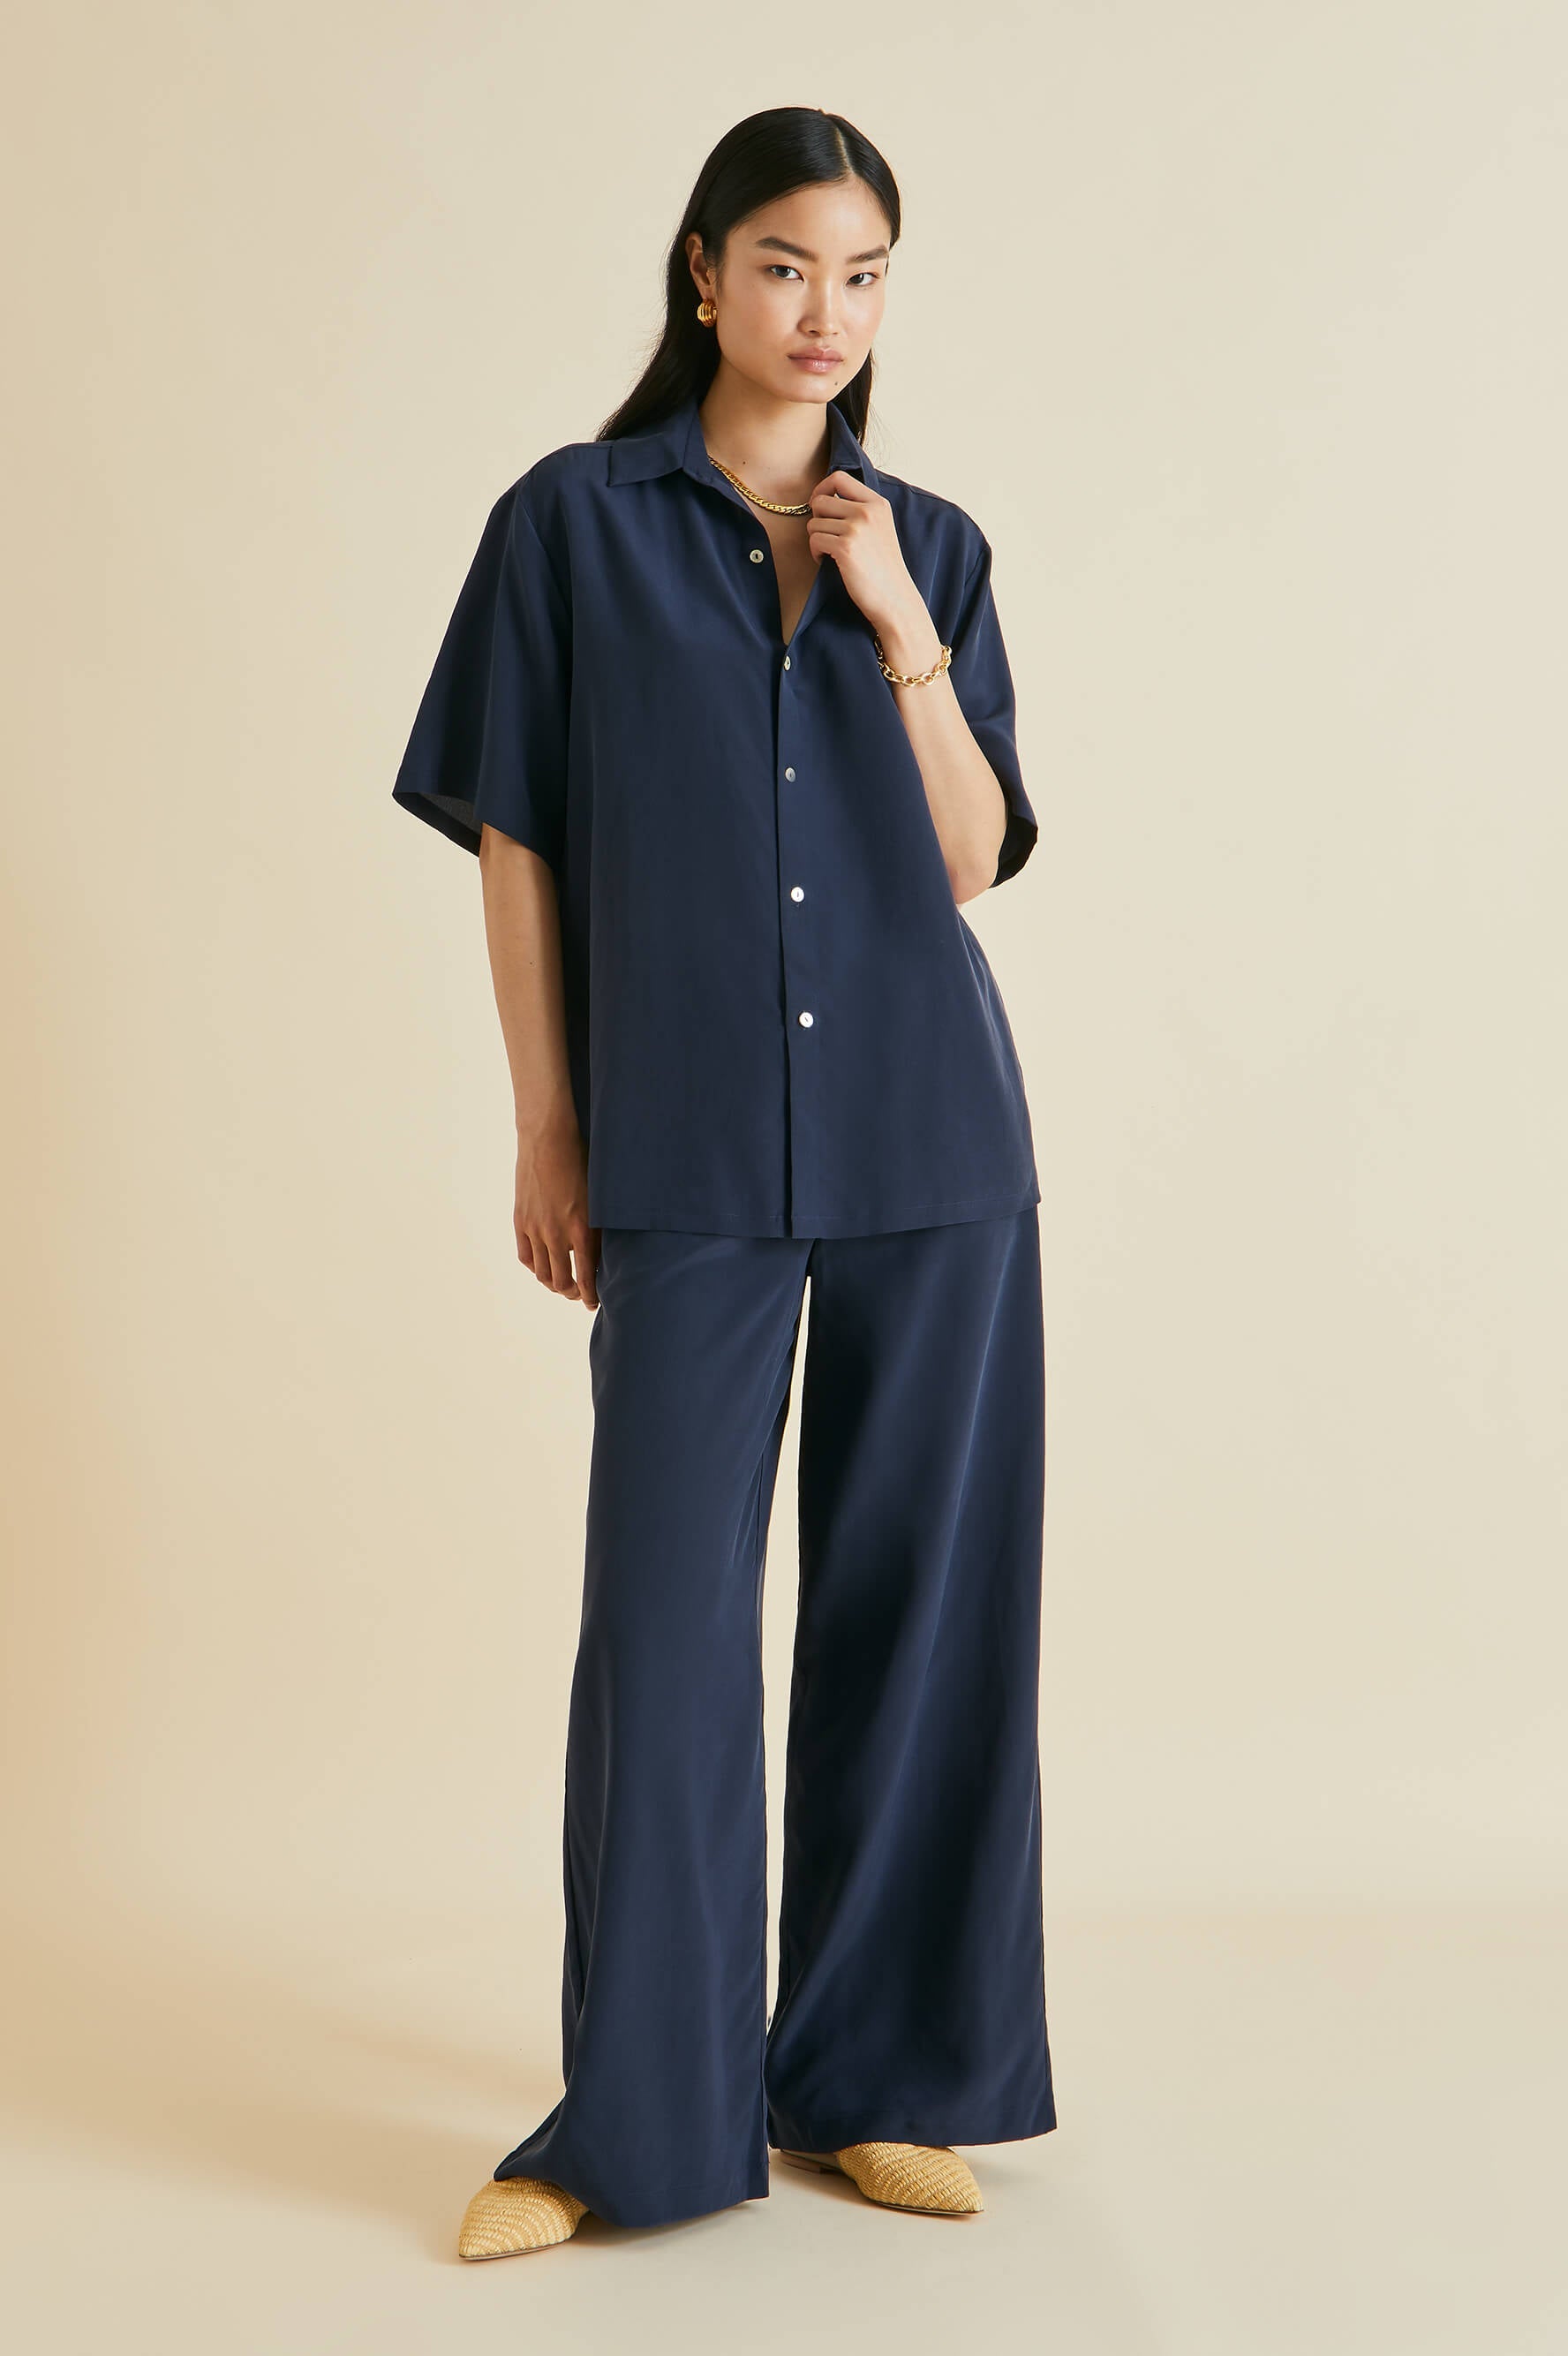 The Coco Jet Black Luxury Silk Pyjamas